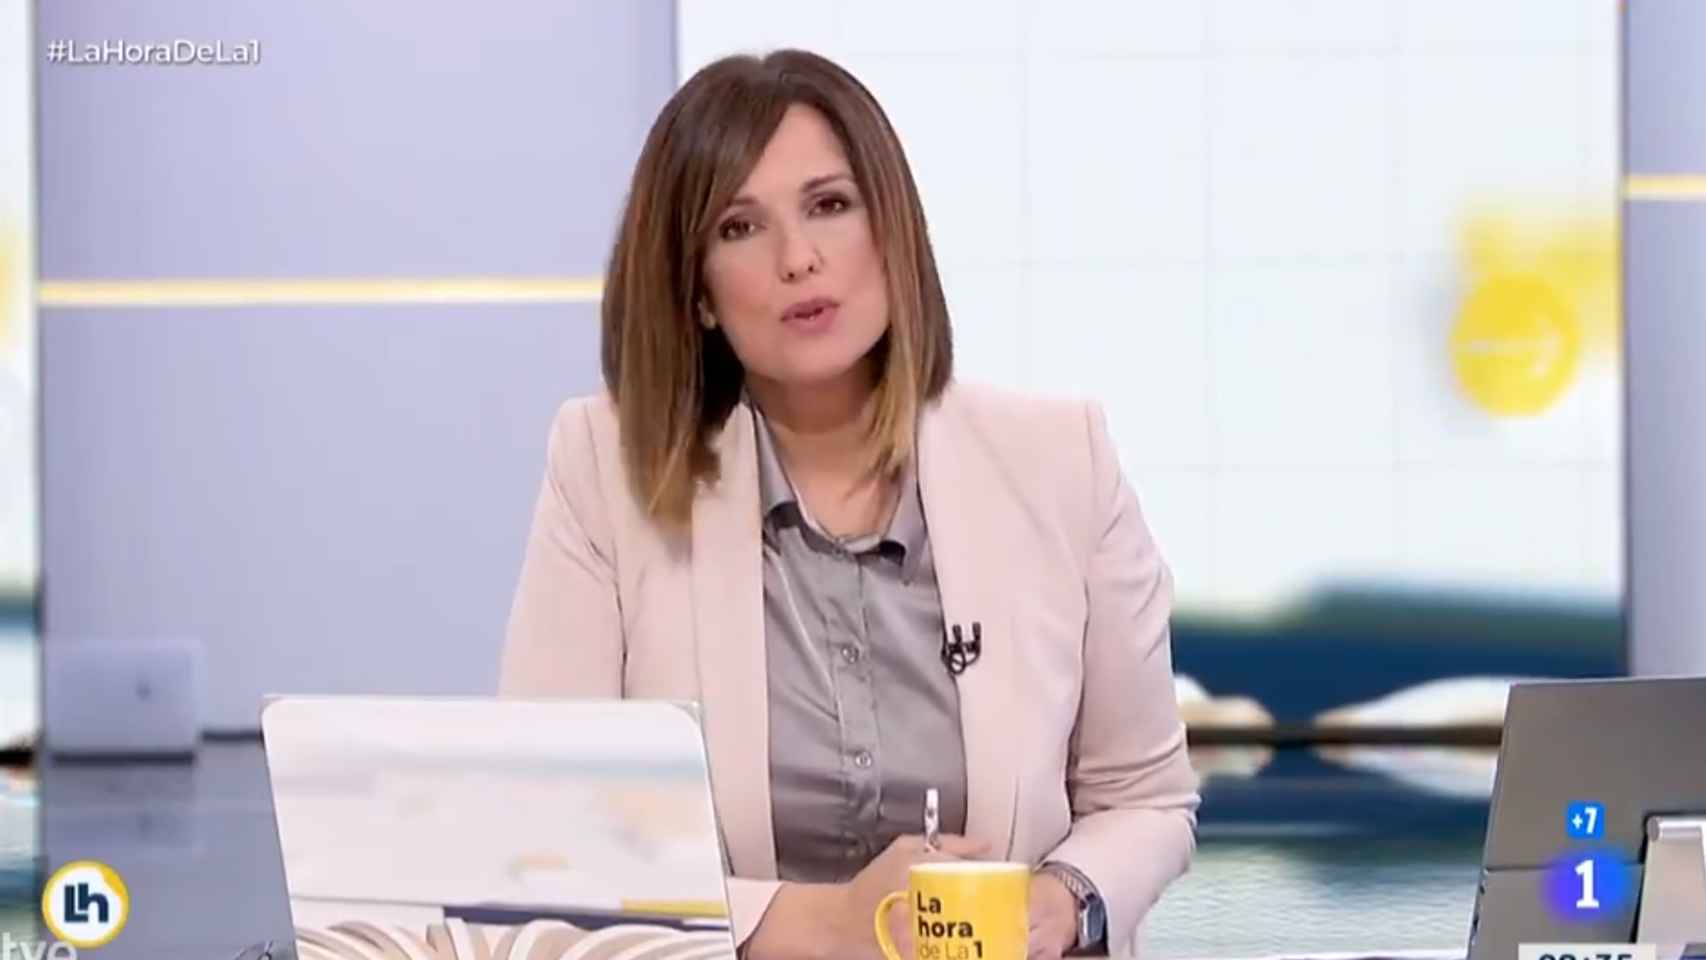 Mónica López, presentadora de 'La Hora de La 1', en su disculpa por el rótulo sobre la Princesa Leonor.